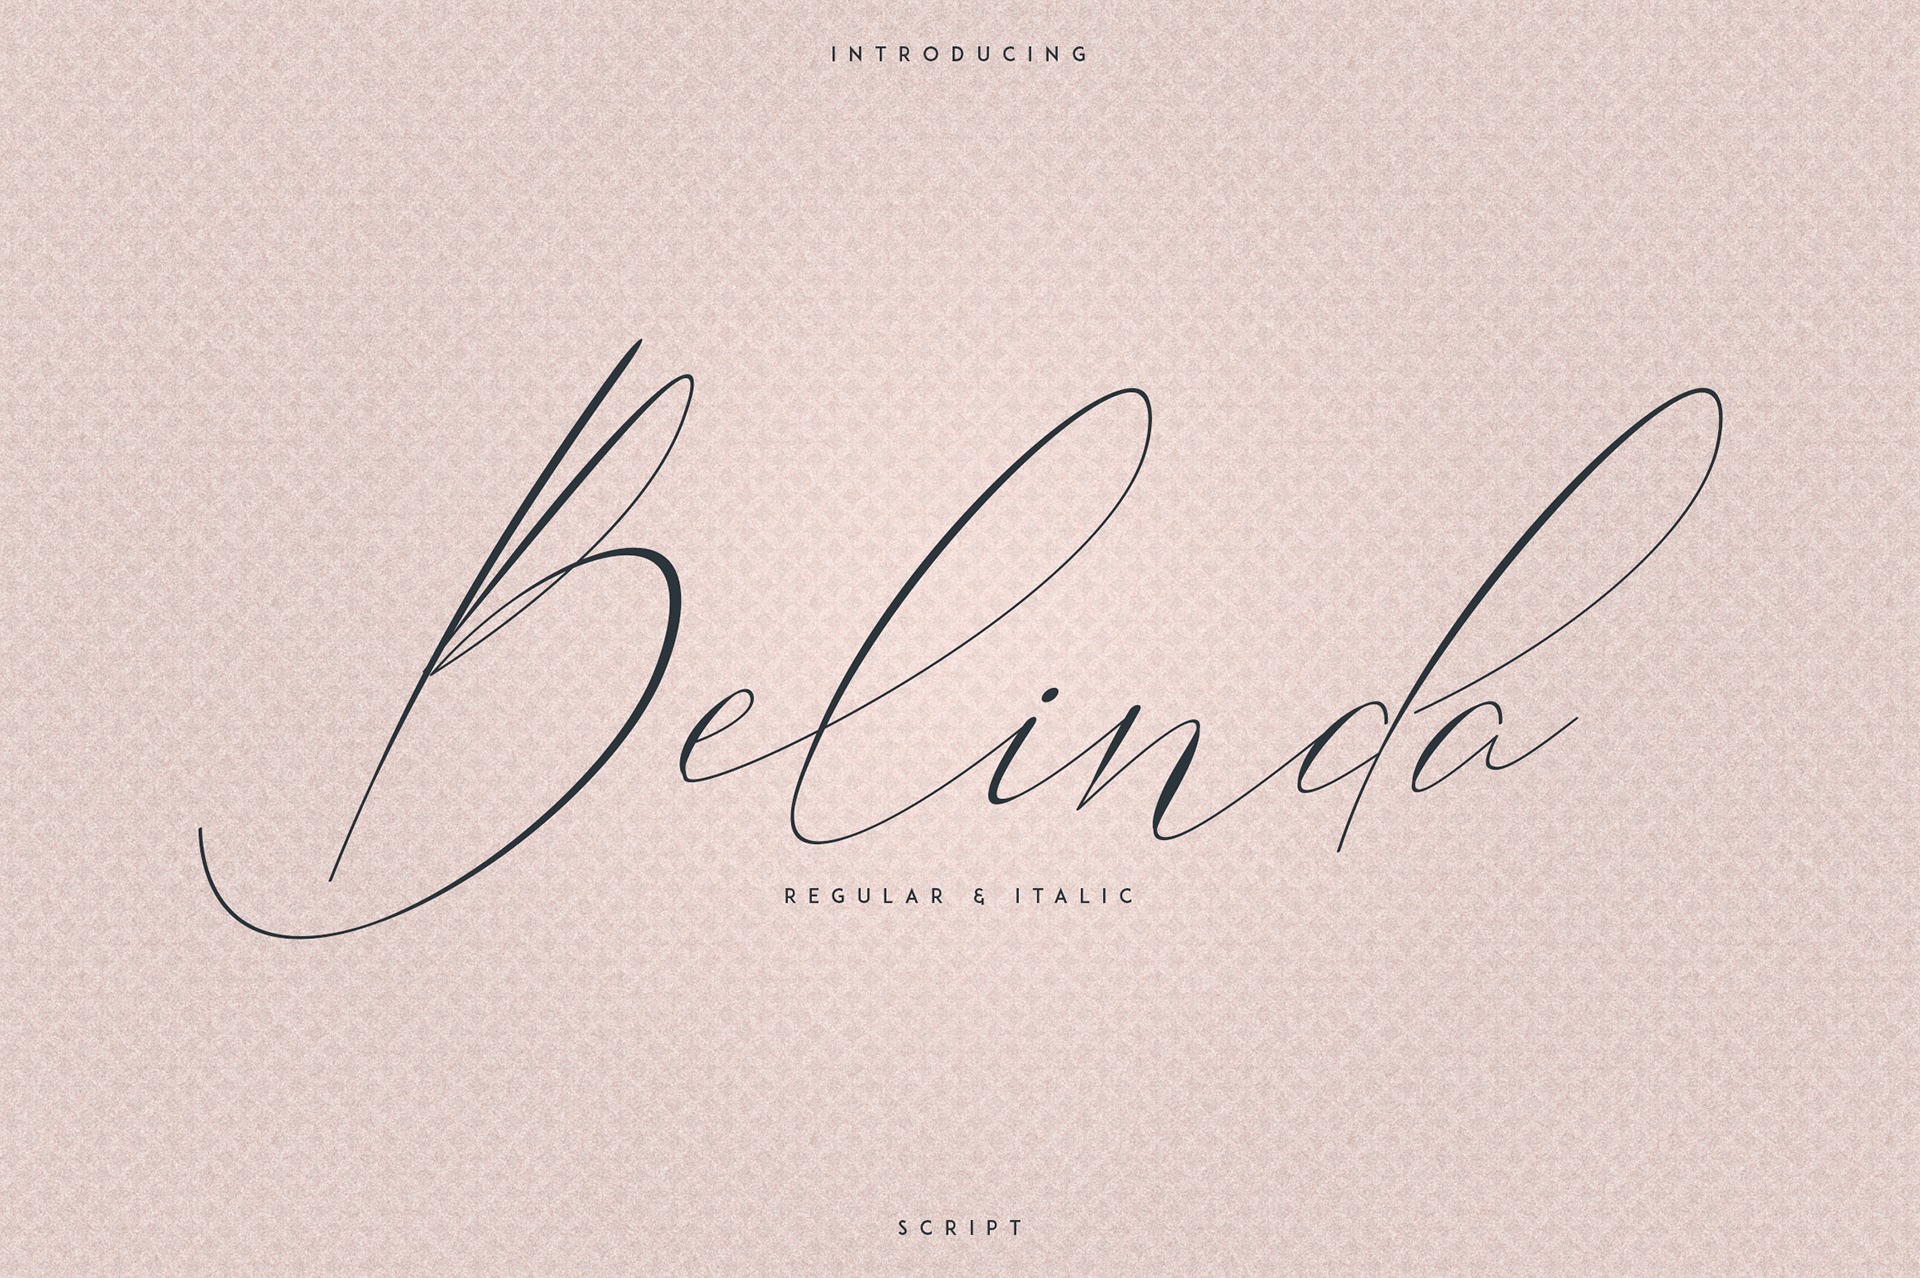 Font Belinda